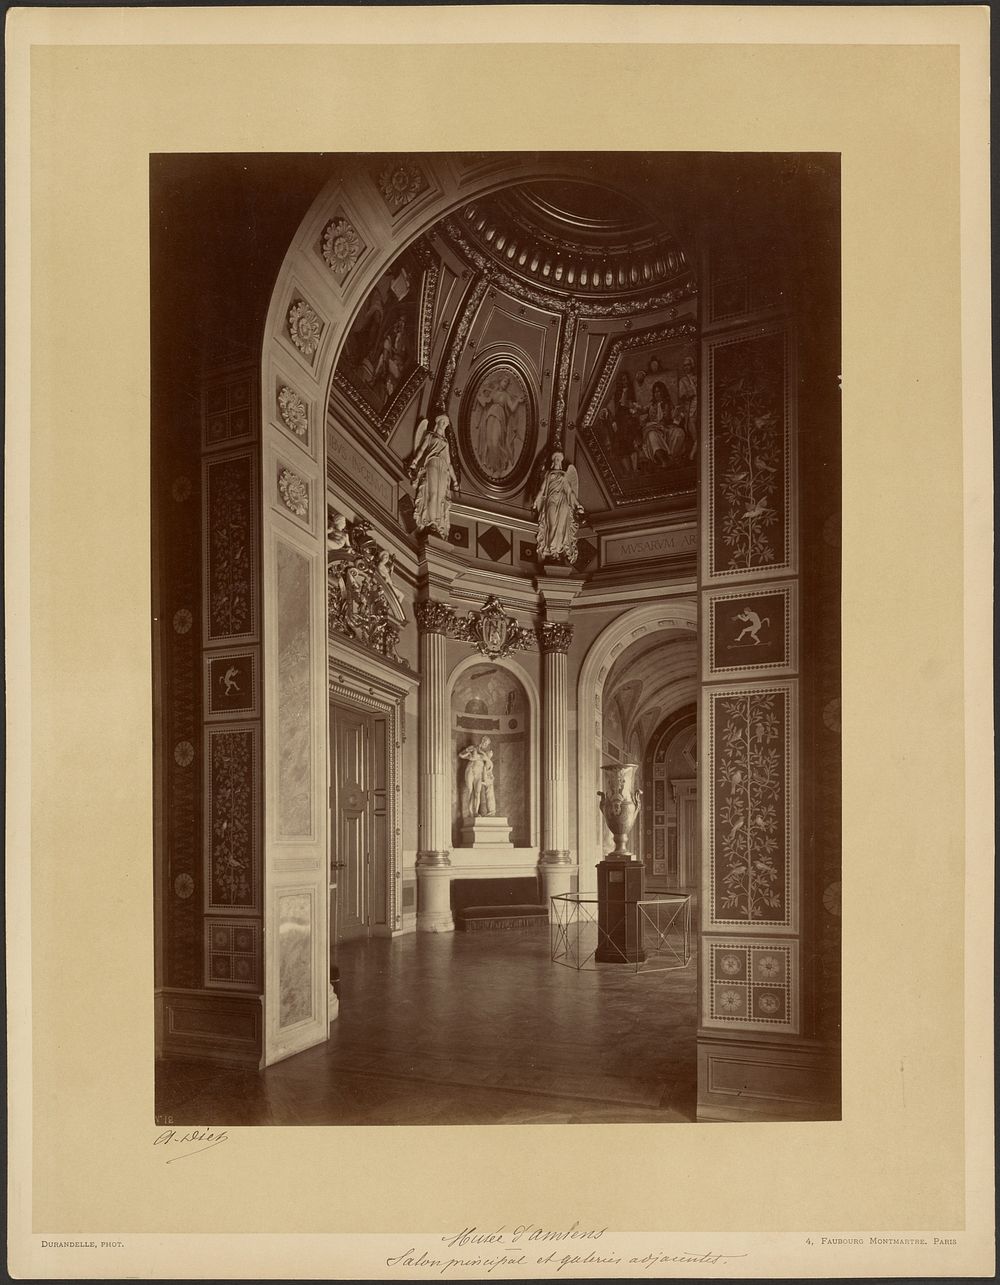 Museé d'Amiens - Salon principal et galeries adjacentes by Louis Émile Durandelle